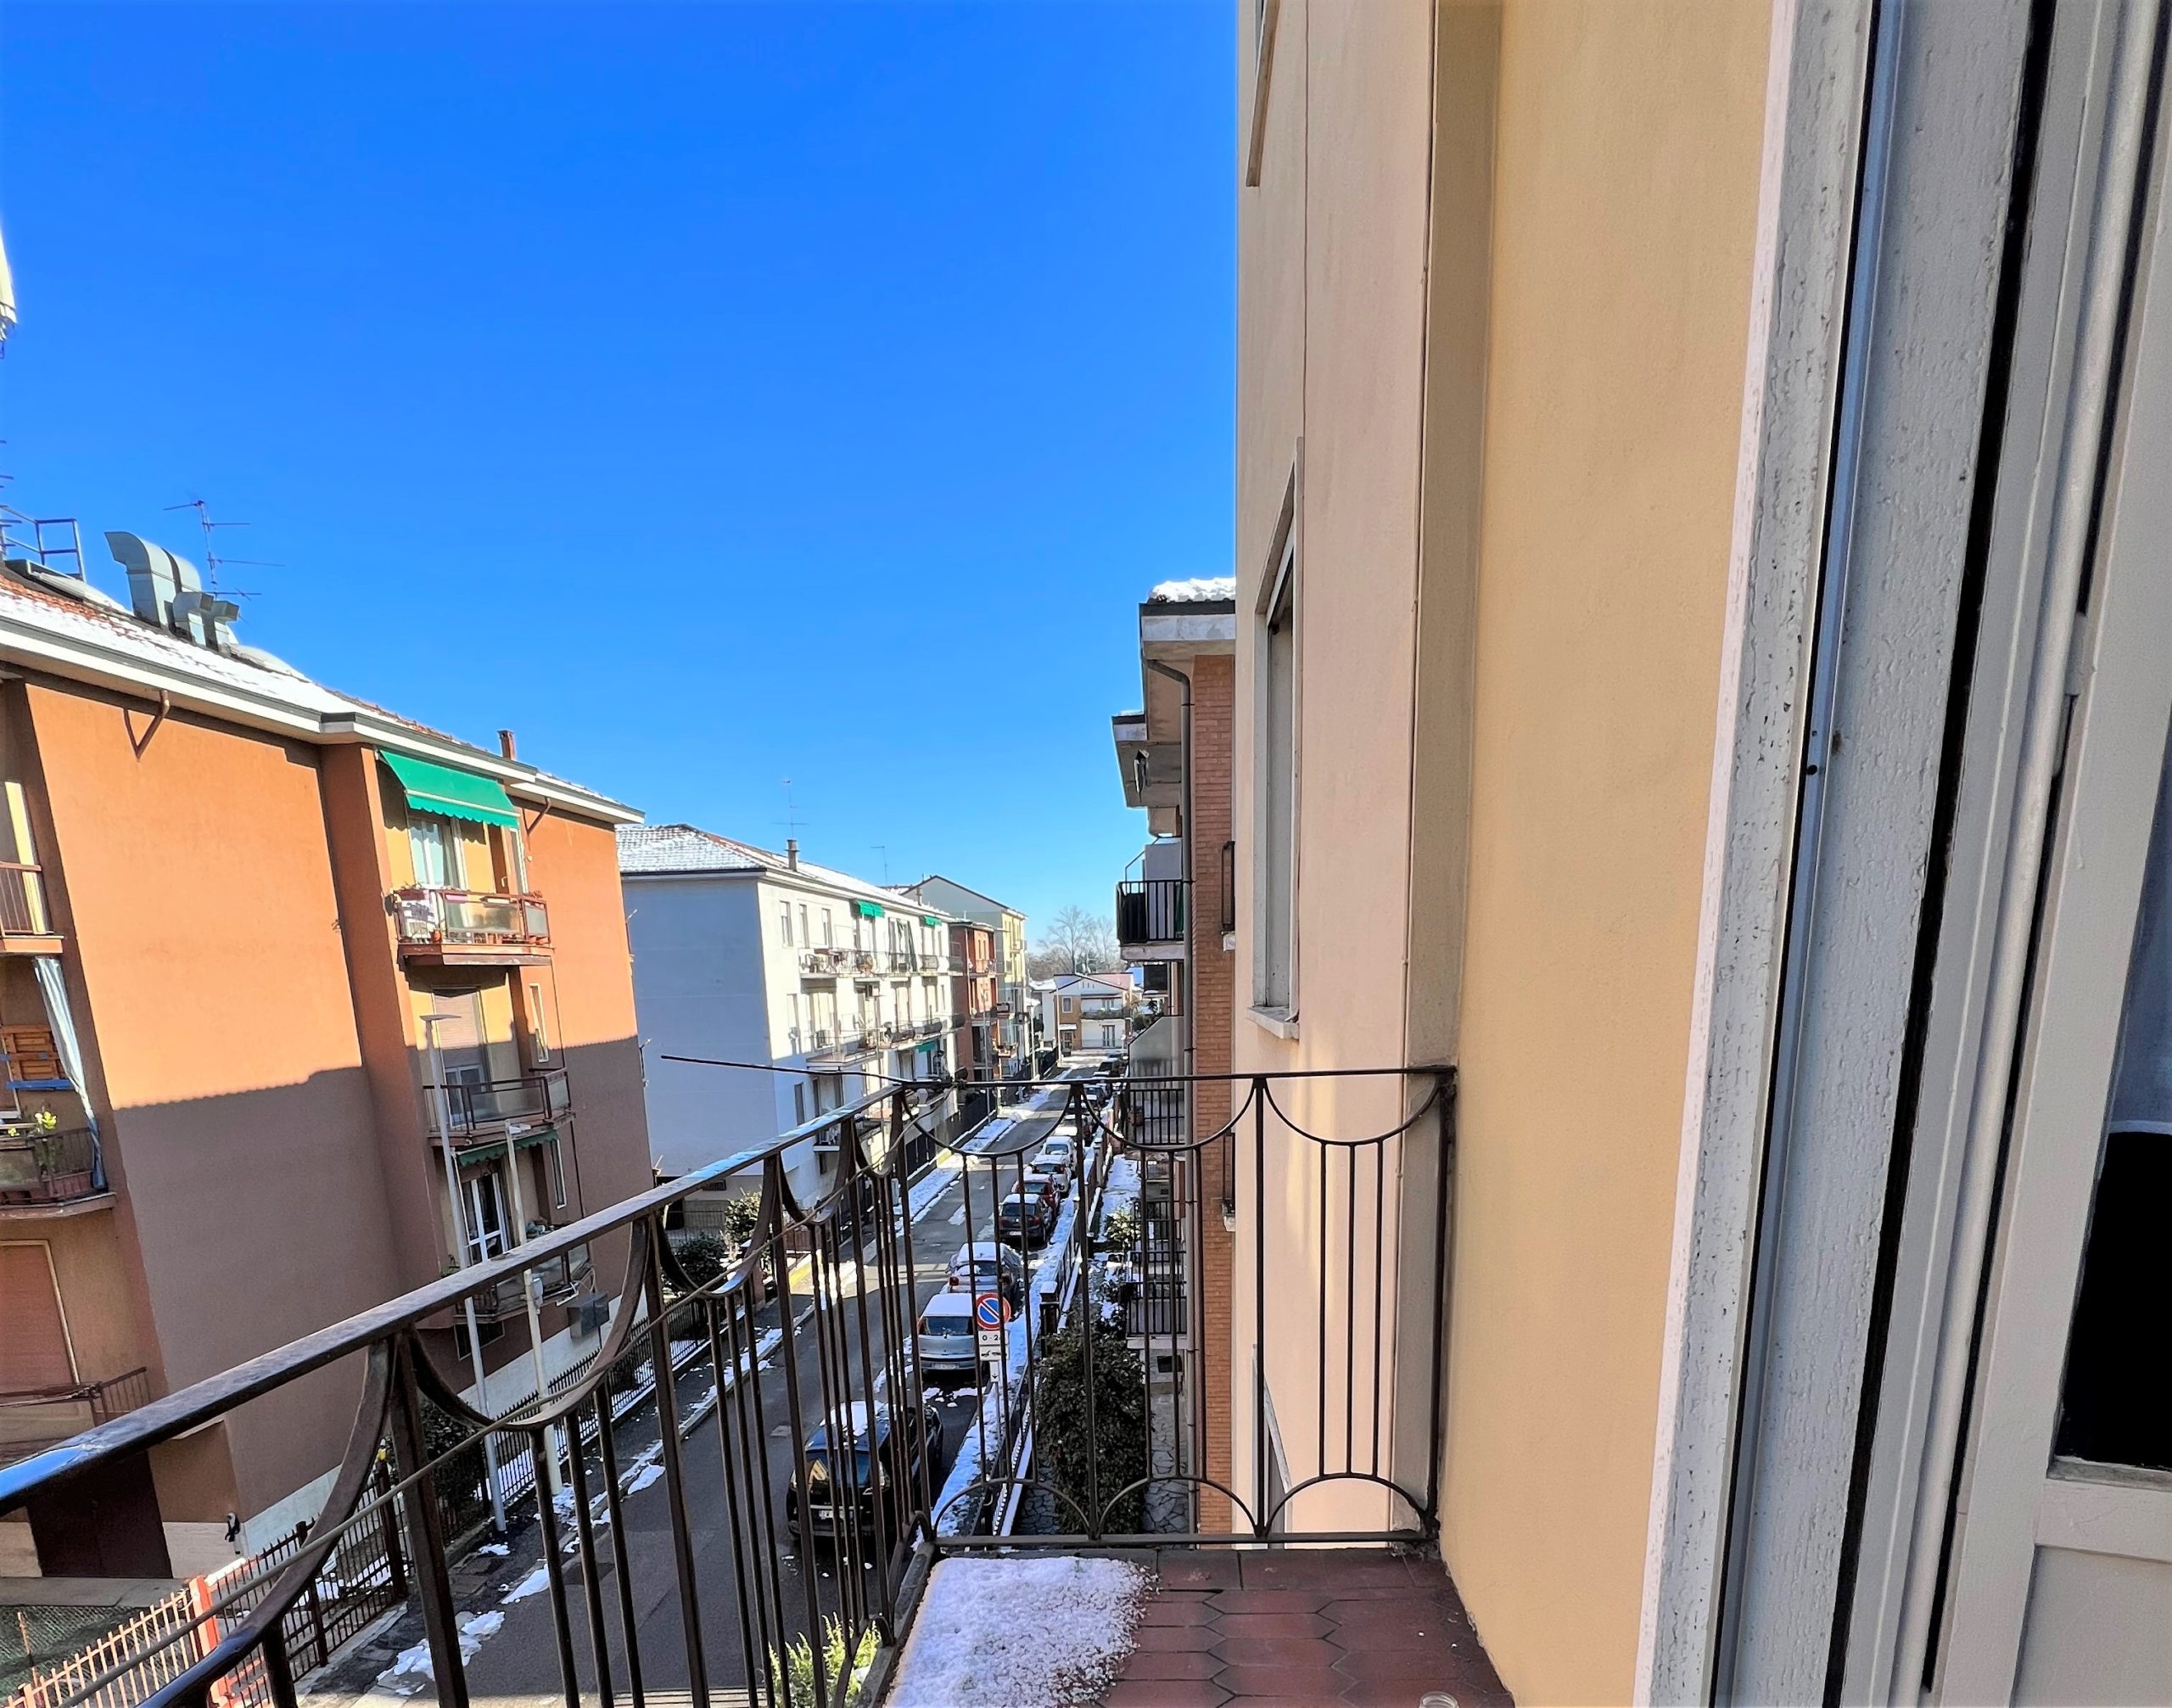 Pavia zona Mirabello (PV)- Appartamento trilocale con balconi